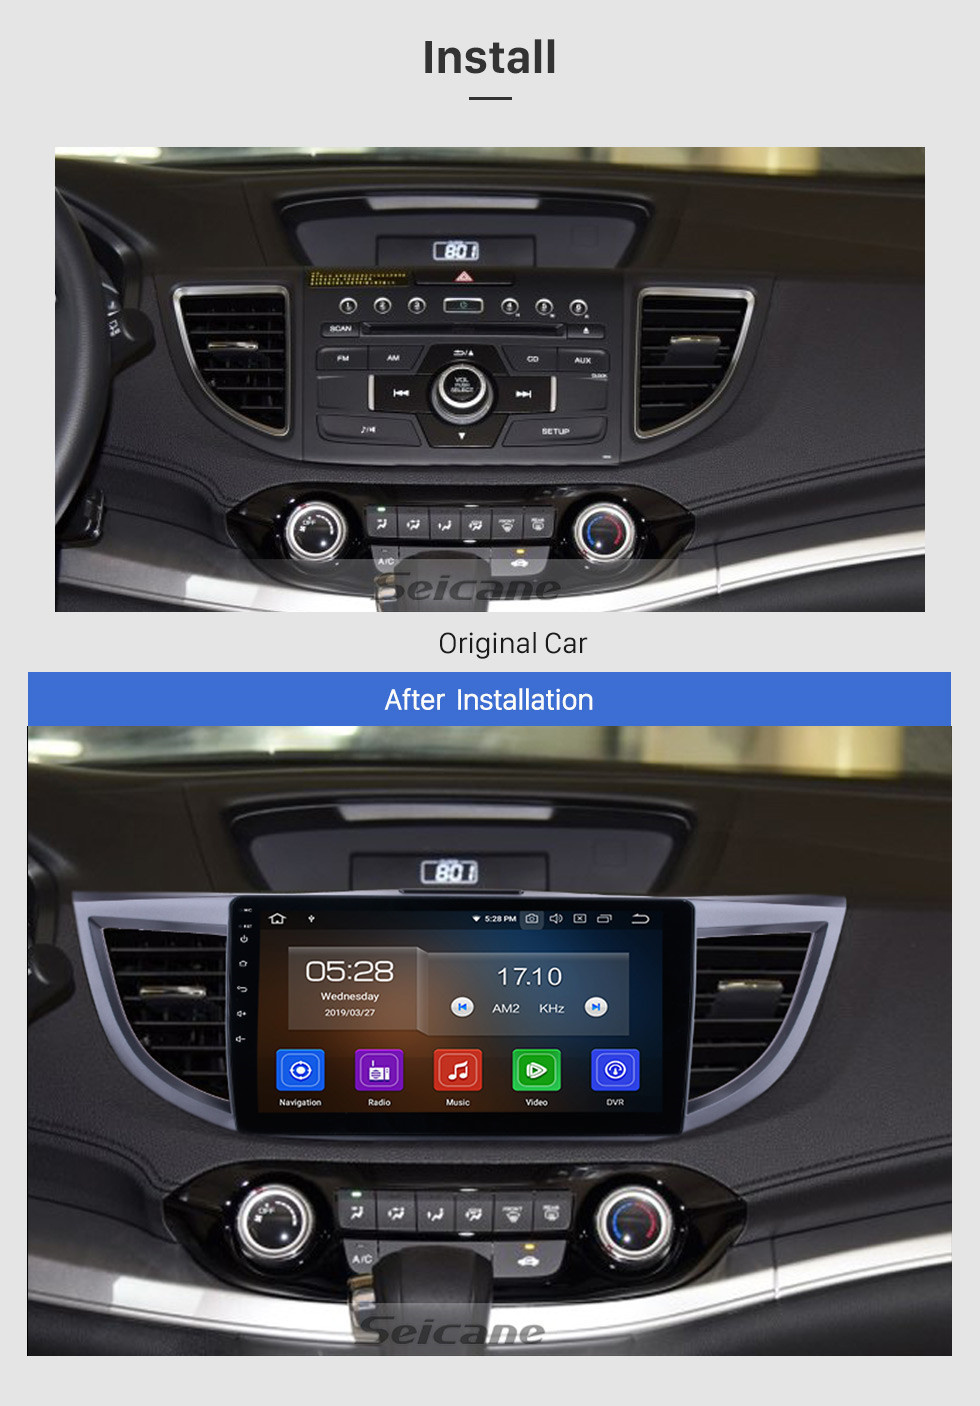 Seicane 10.1 pulgadas 2011-2015 Honda CRV versión alta con pantalla Android 13.0 Radio Sistema de navegación GPS 3G WiFi Pantalla táctil capacitiva TPMS DVR OBD II Cámara trasera AUX Control de volante USB SD Bluetooth HD 1080P Video